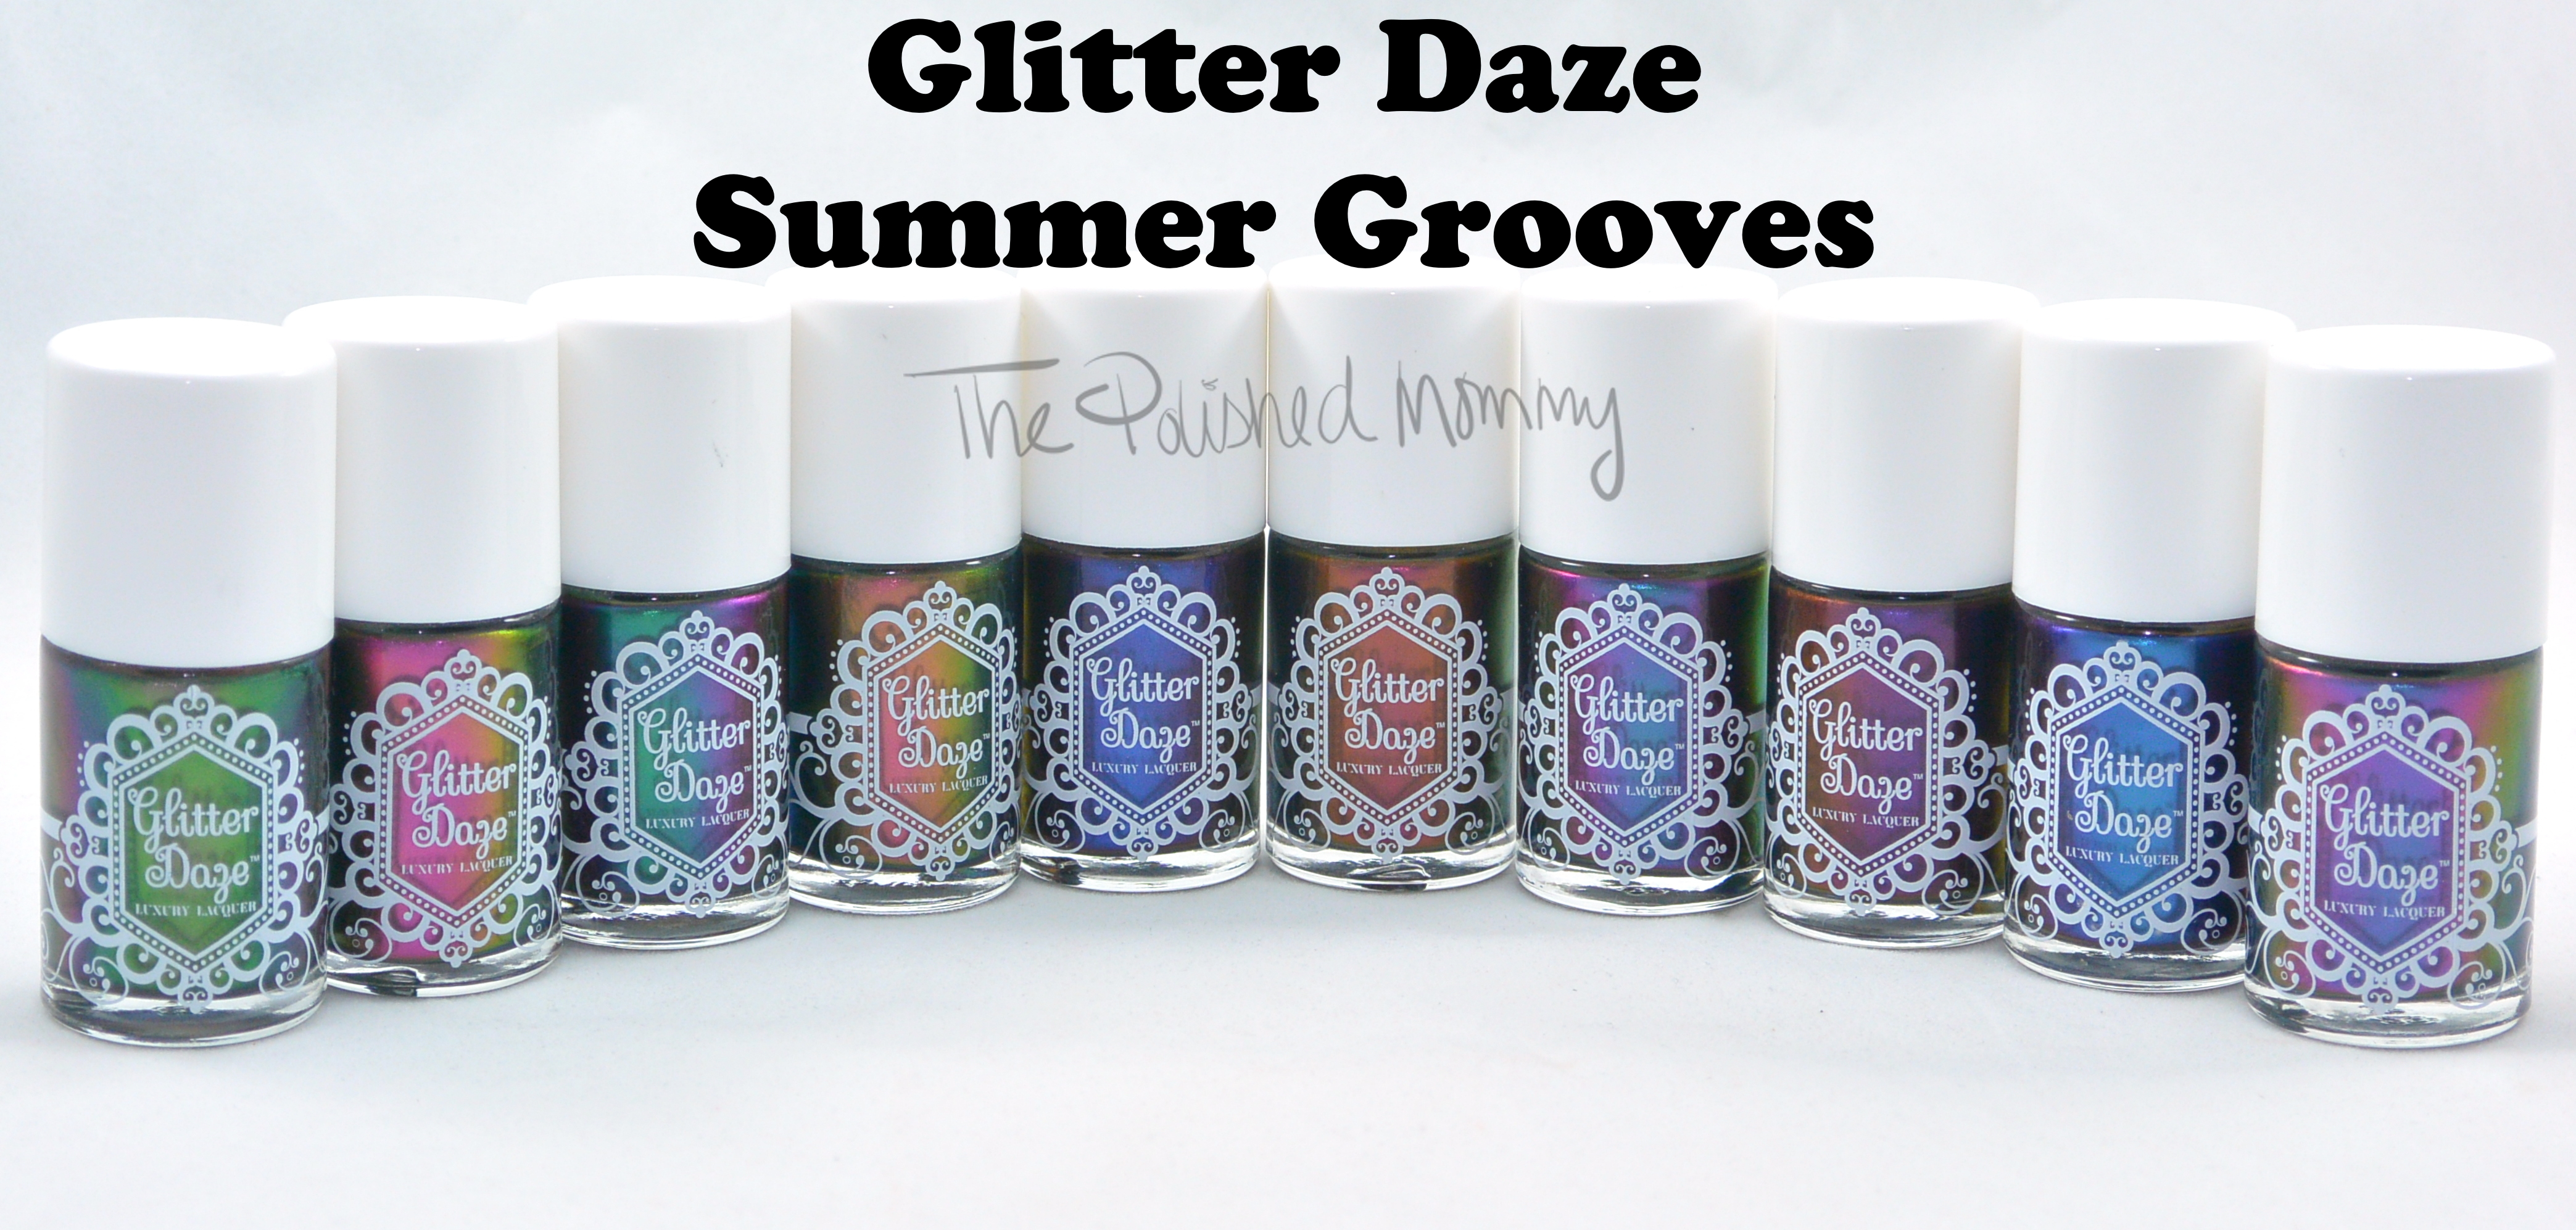 Glitter Daze Summer Grooves banner